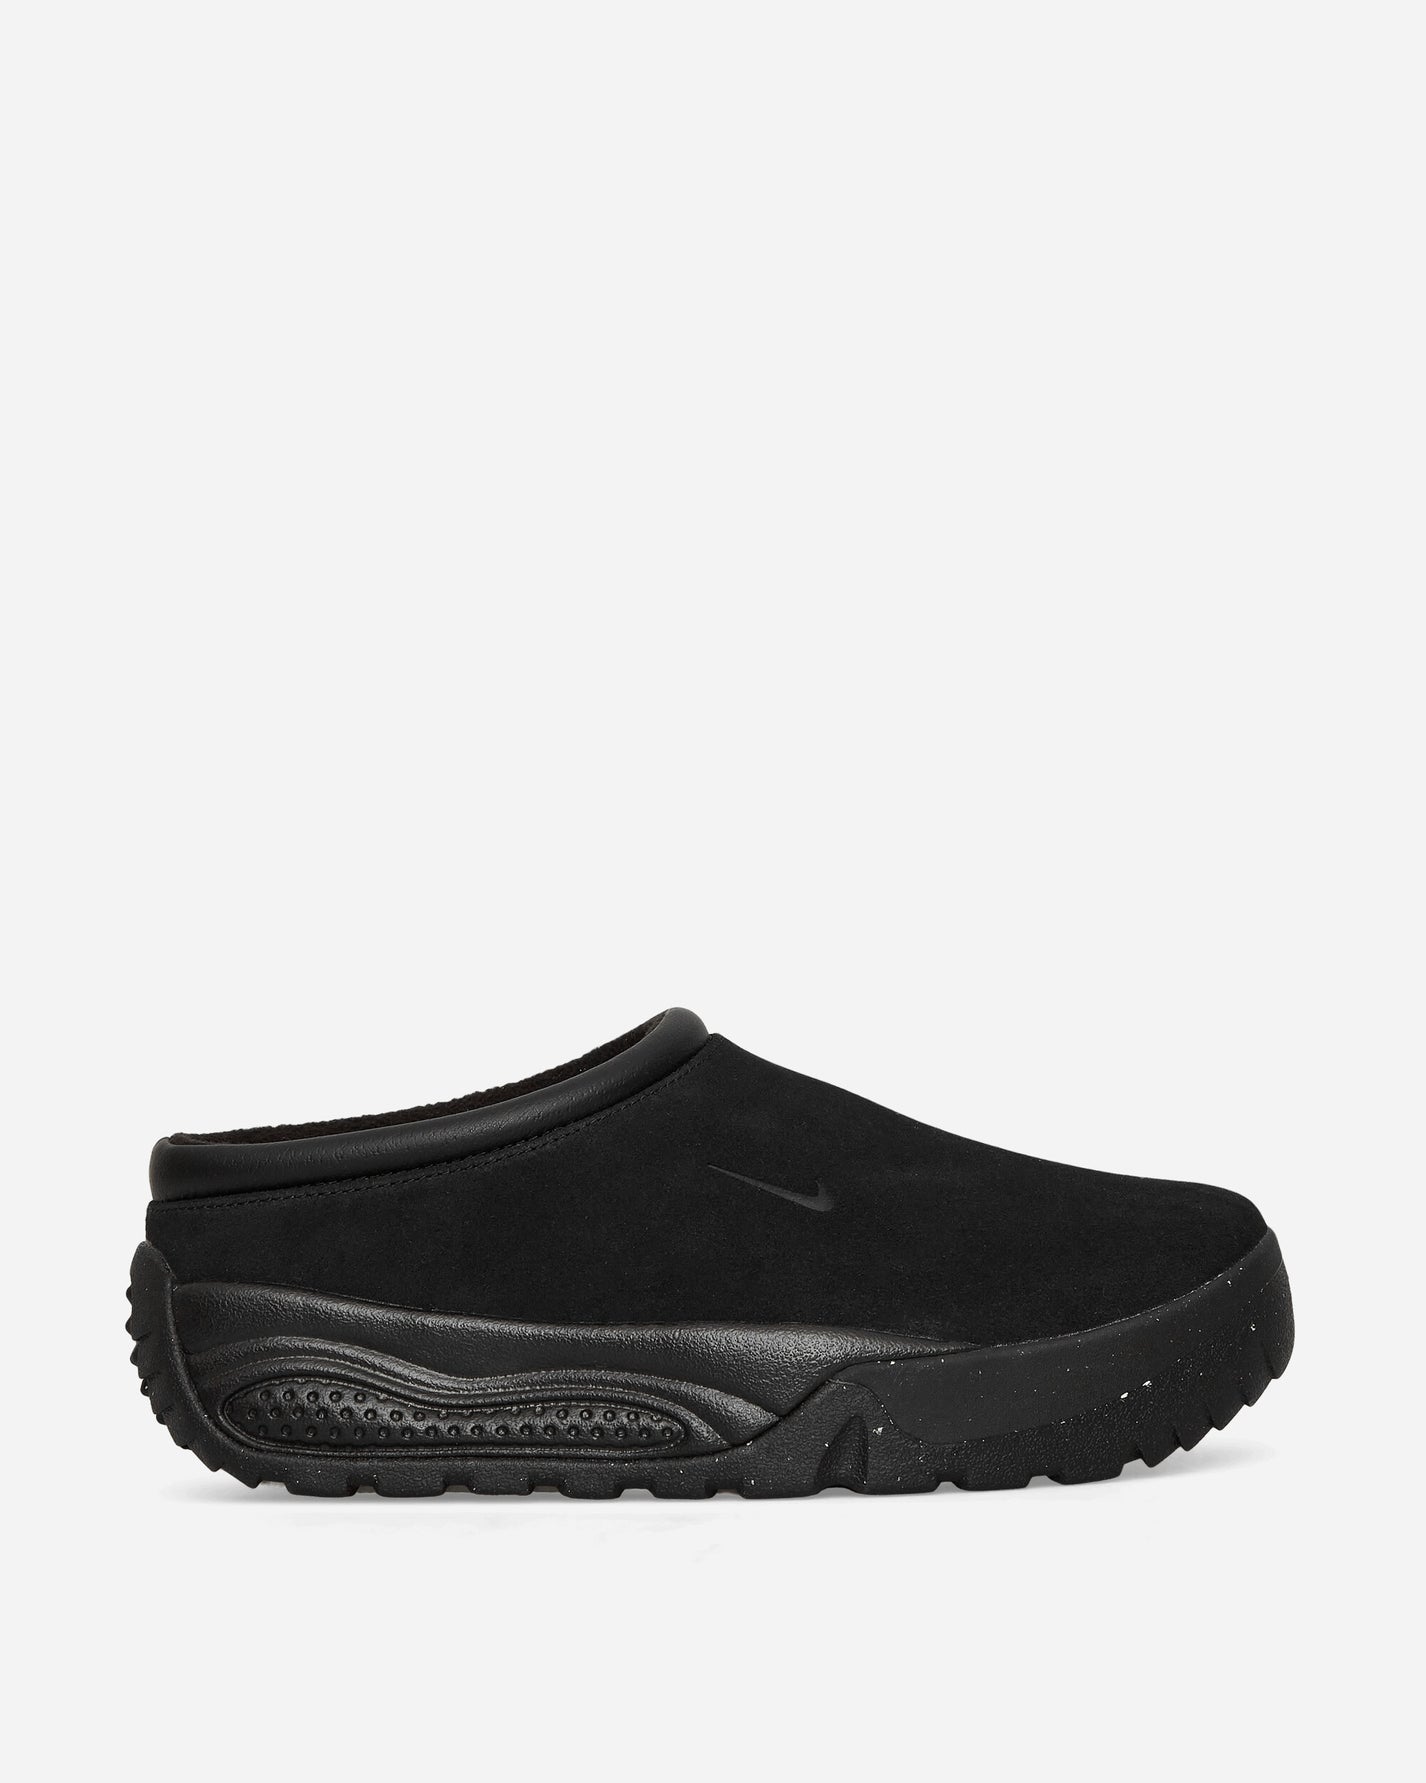 Nike Acg Rufus Black/Black Sneakers Low FV2923-001